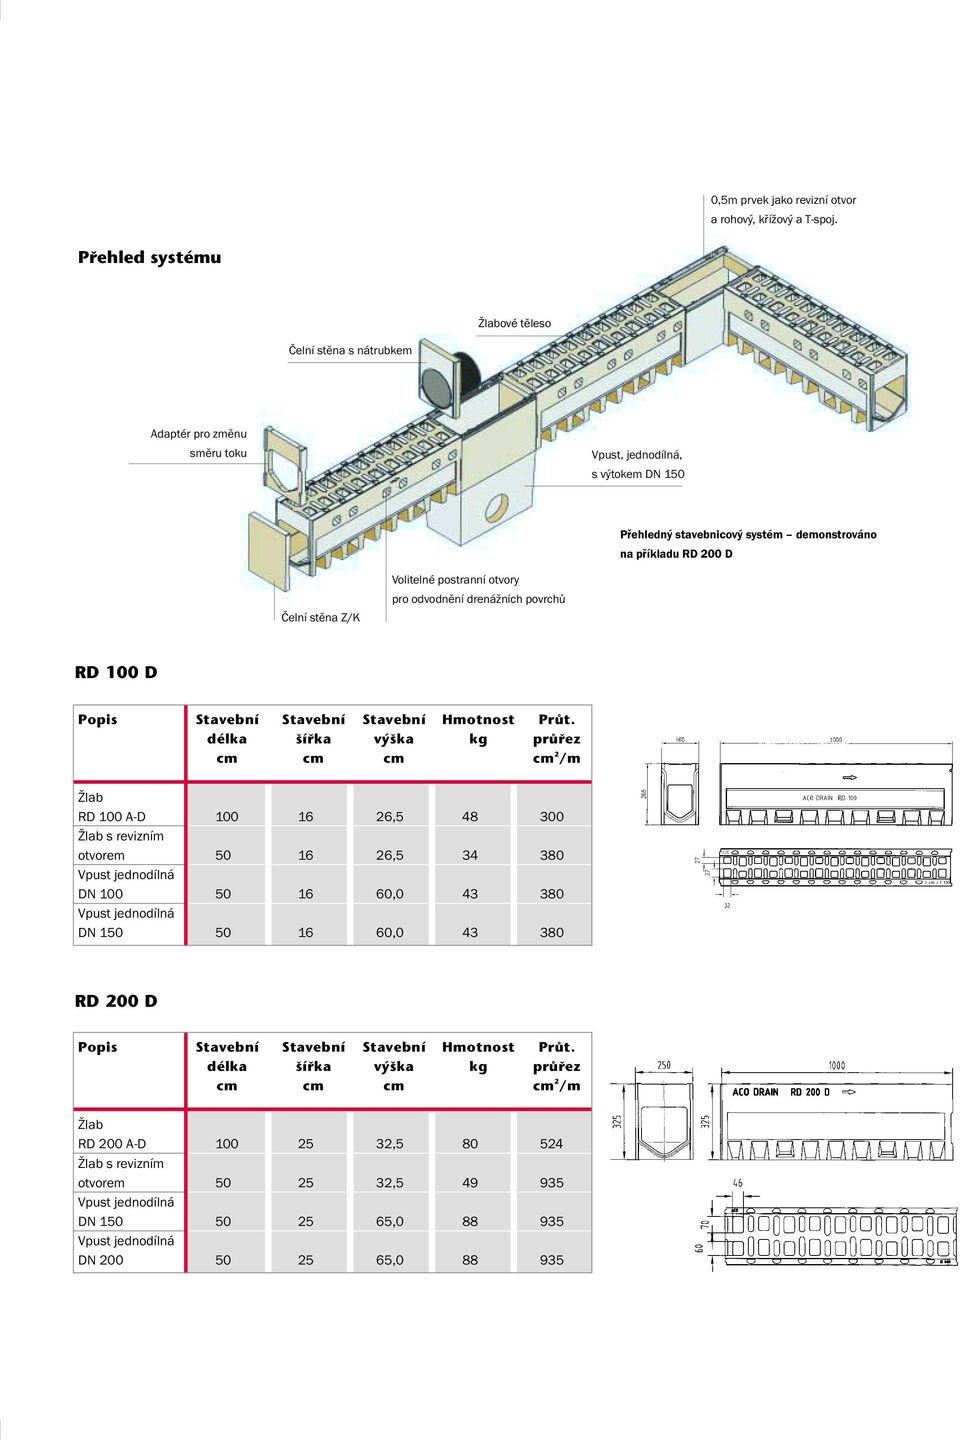 stěna Z/K Volitelné postranní otvory pro odvodnění drenážních povrchů RD 100 D Popis Stavební Stavební Stavební Hmotnost PrÛt.